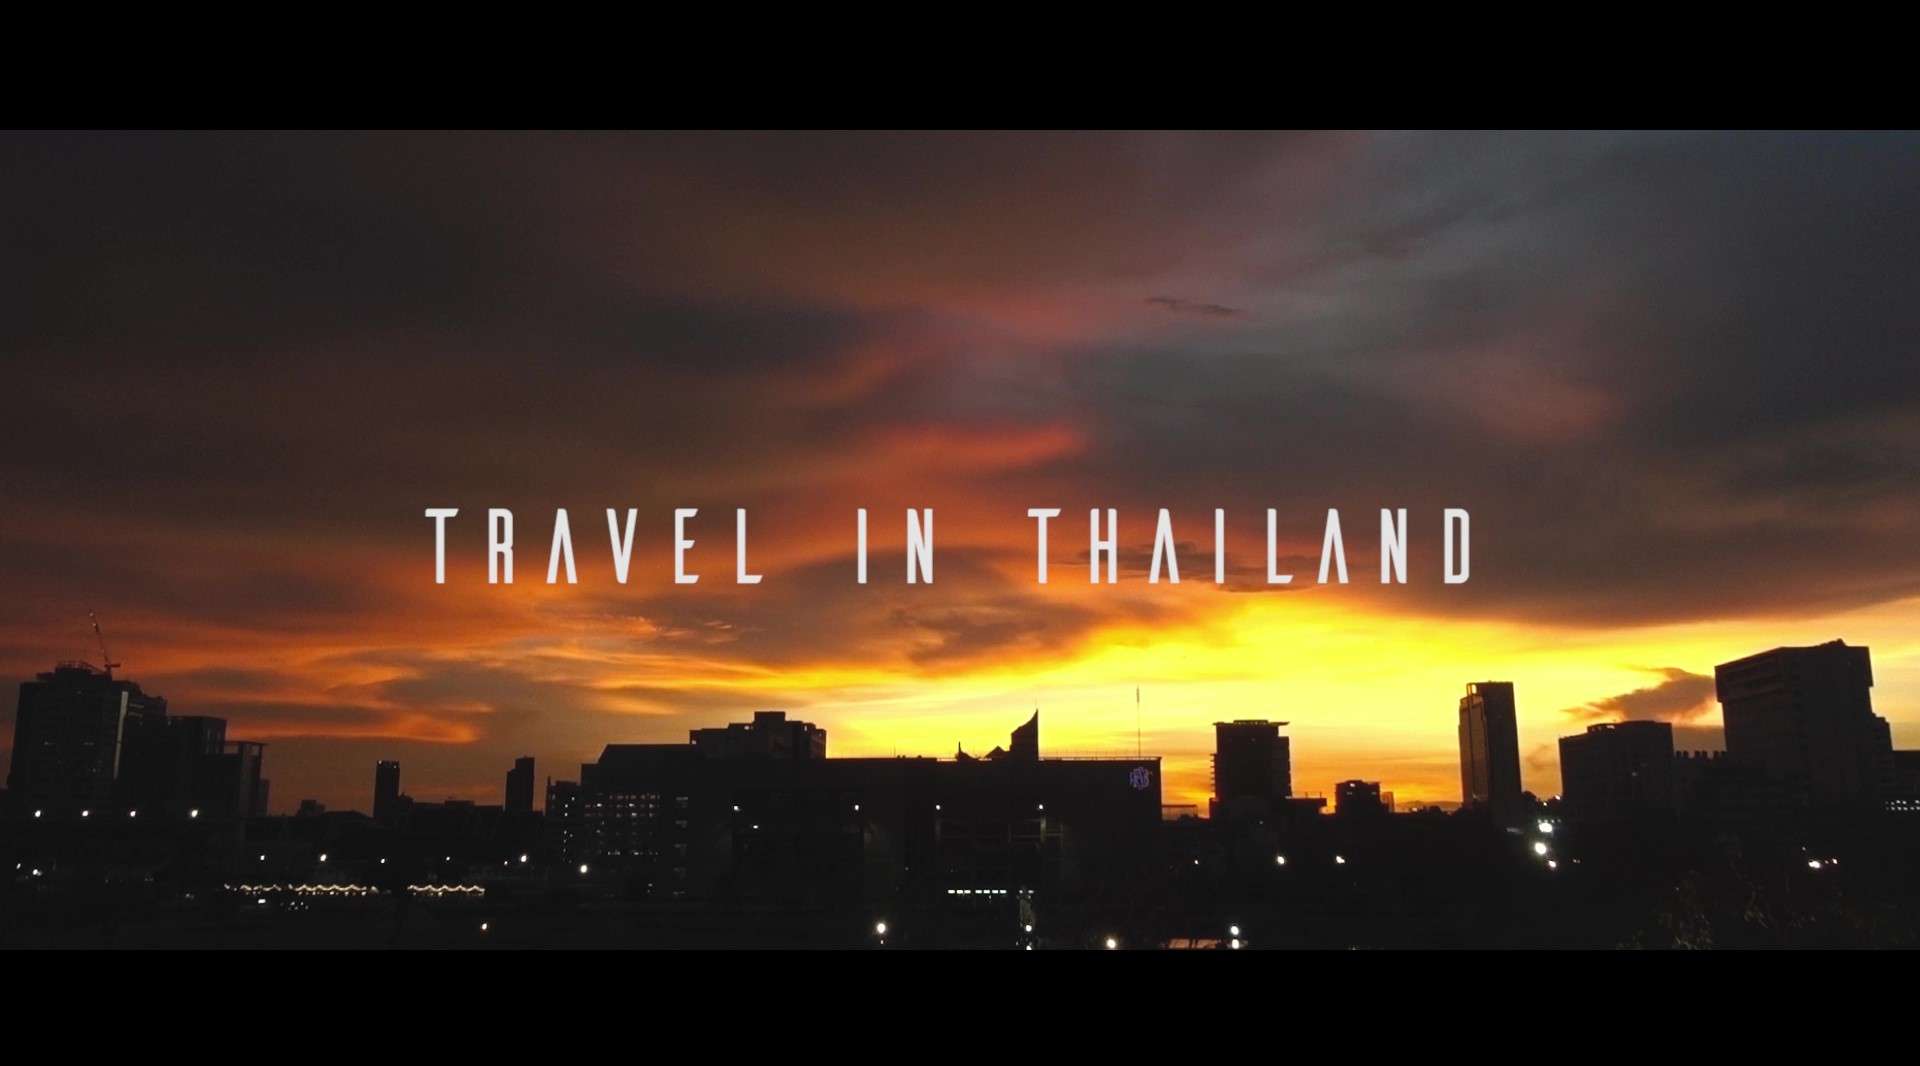 Travel in Thailand